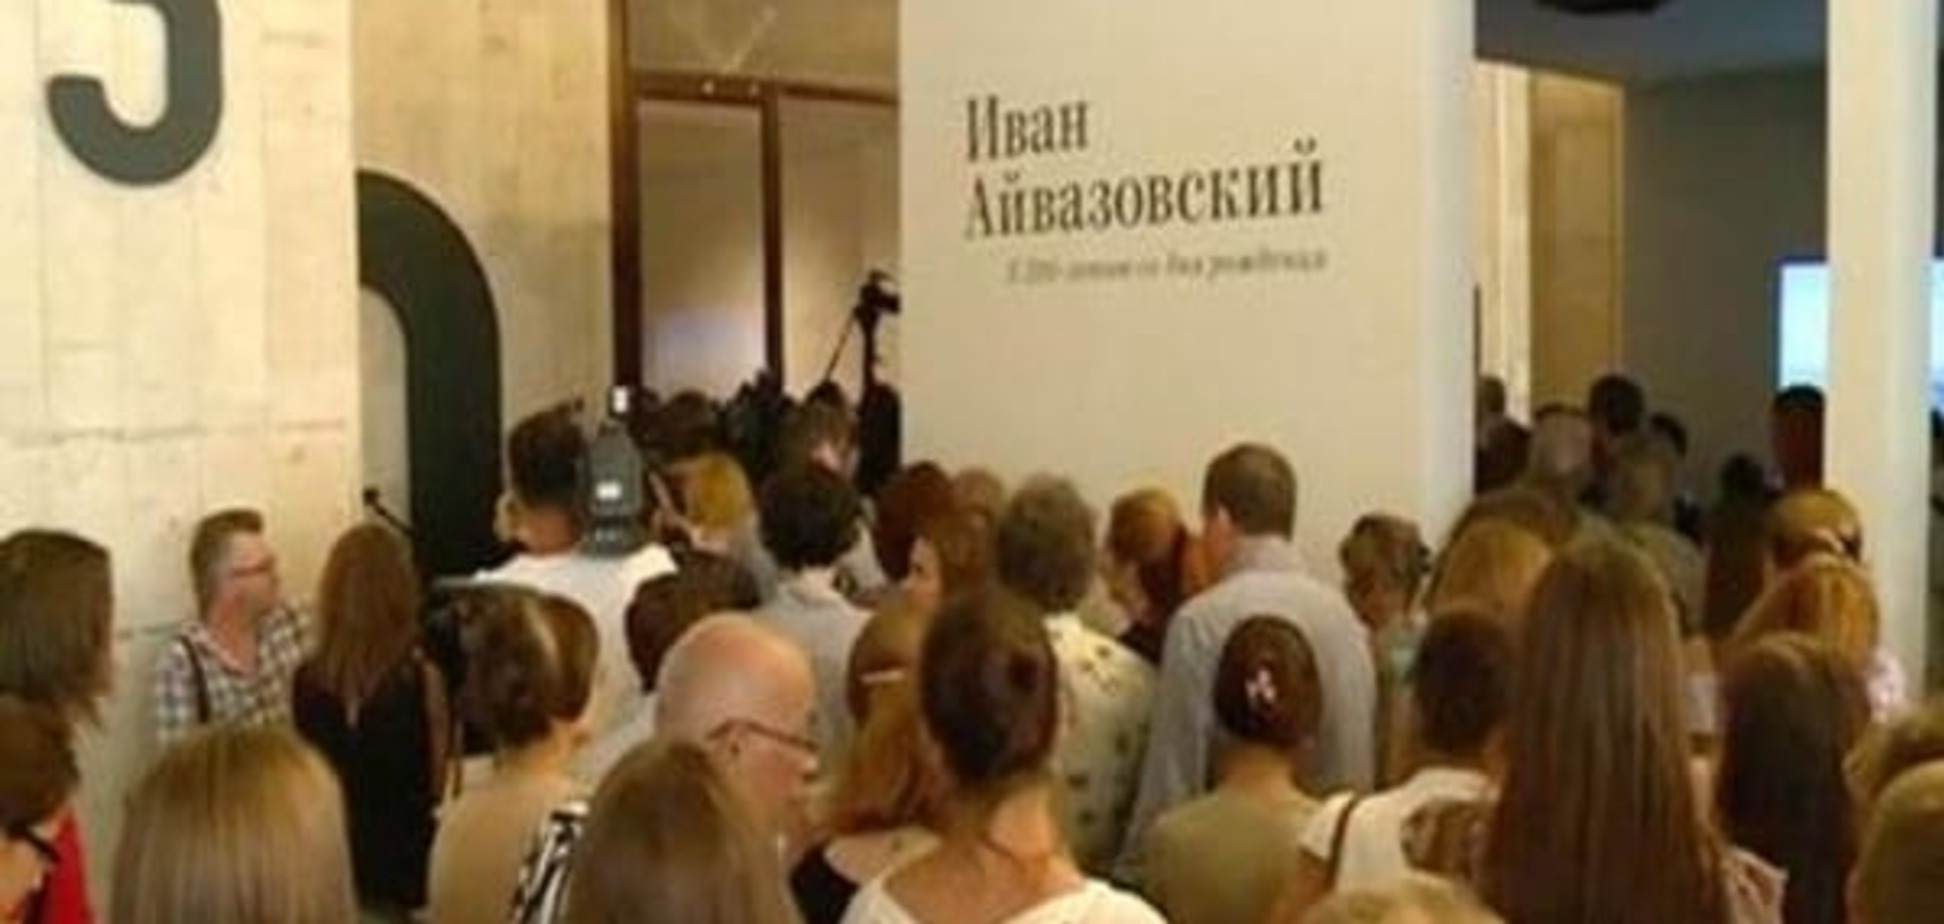 'Опасный прецедент': эксперты прокомментировали выставку в Москве картин из Крыма